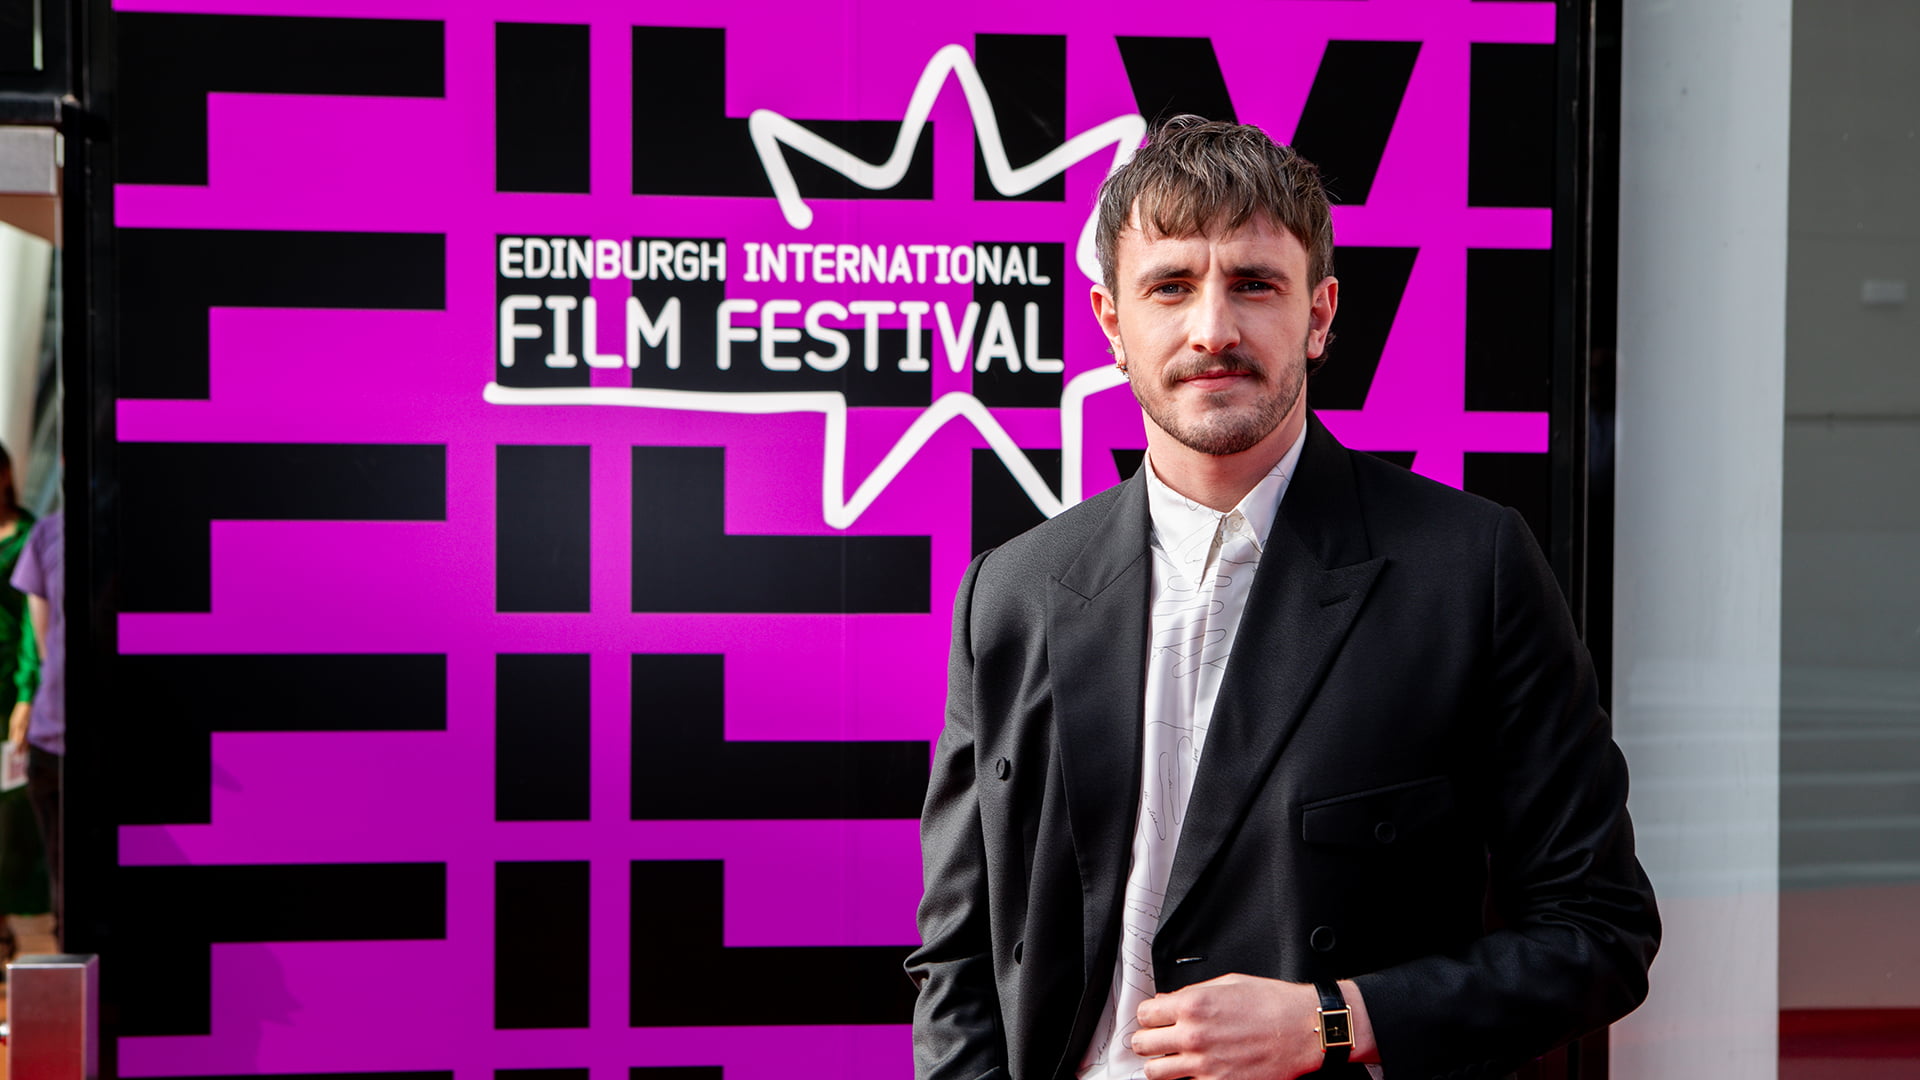 Edinburgh International Film Festival 2022 Opening Gala. Photo by Lloyd Smith